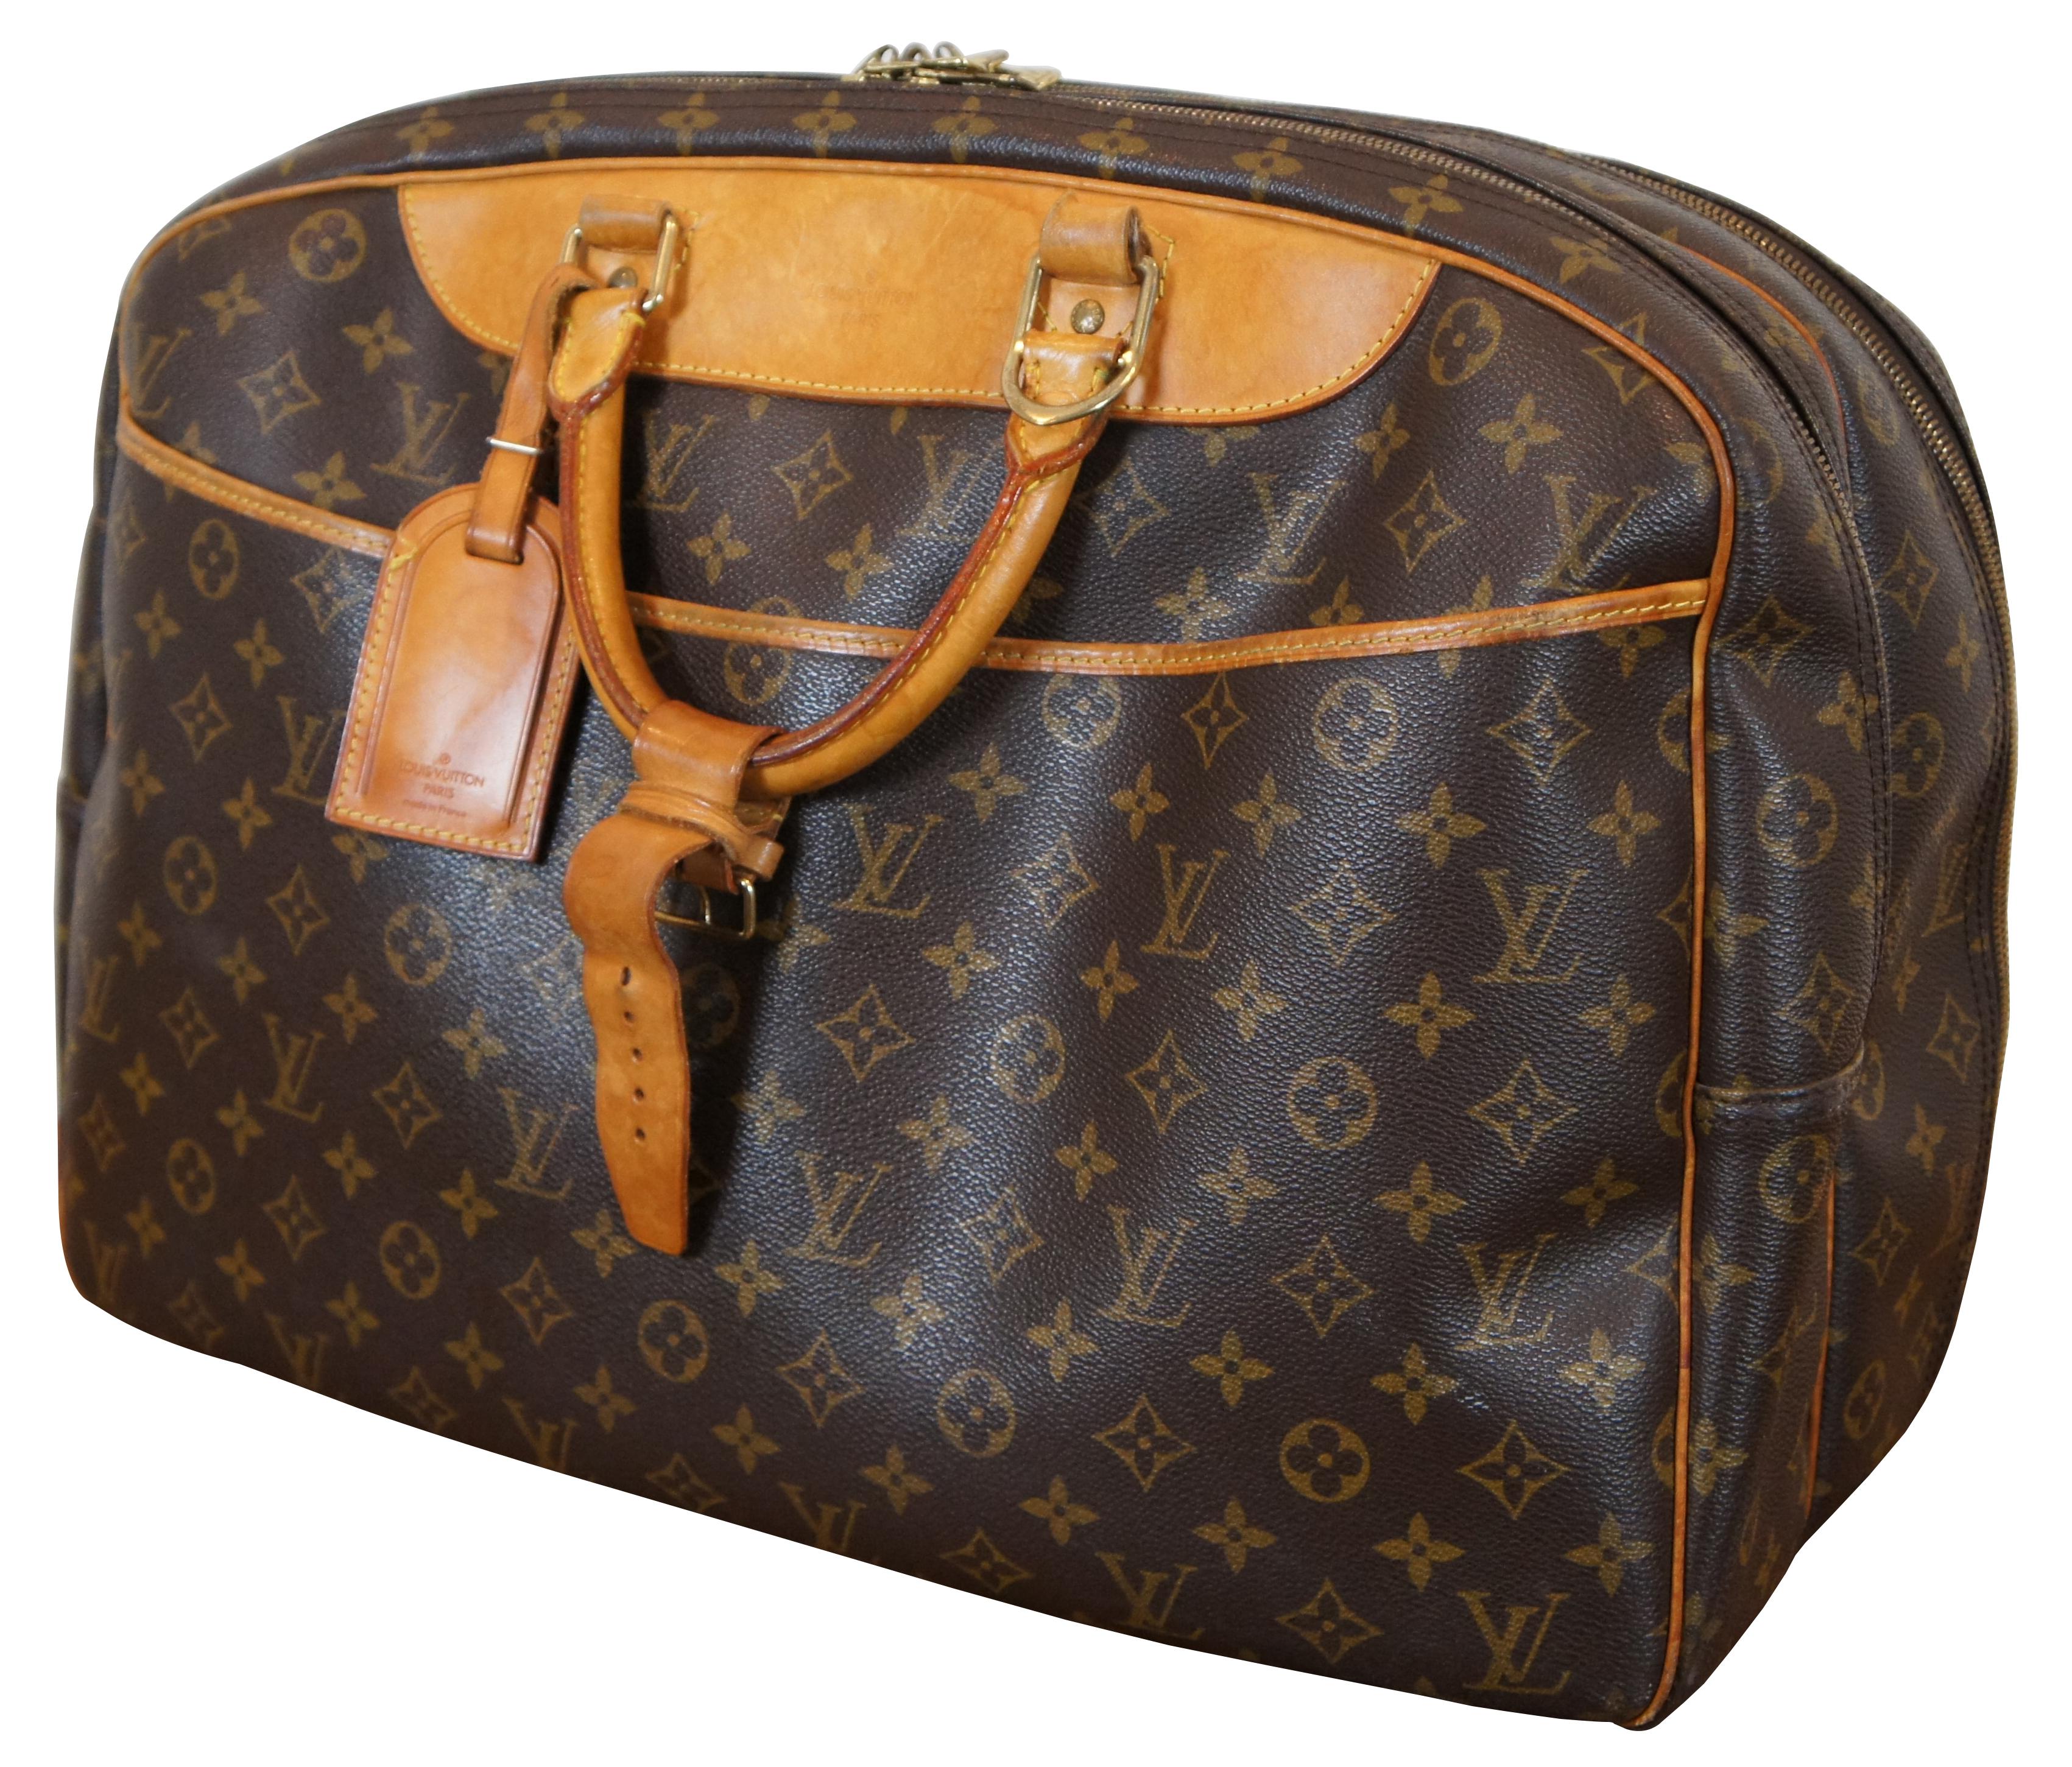 Louis Vuitton Paris Alize 24 Heures Monogram Reisetasche mit klassischem Monogramm-Muster, runden Griffen und goldfarbenen Beschlägen. Er ist mit einem praktischen Frontfach ausgestattet. Die Tasche öffnet sich zu 2 großen Fächern, beide mit